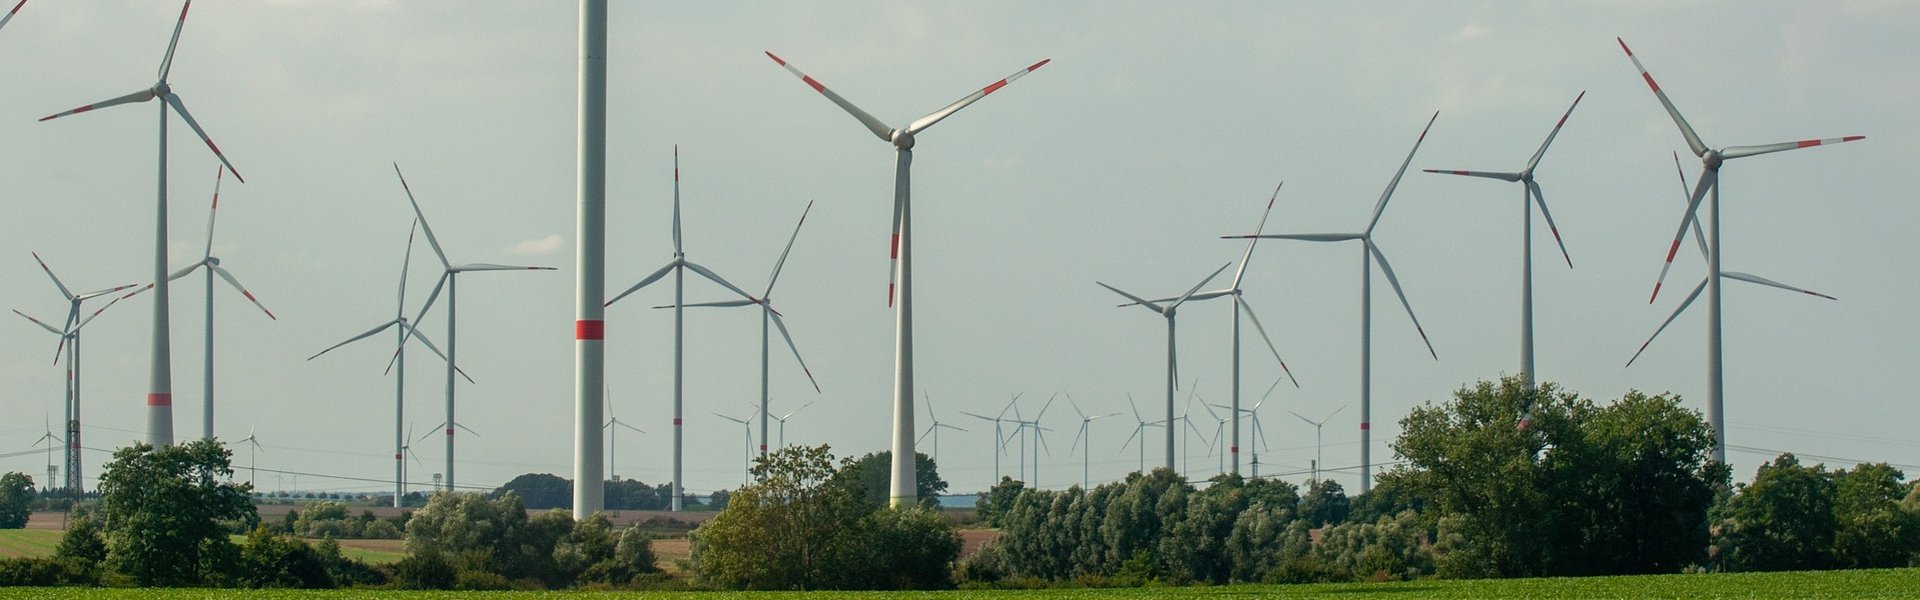 windmills-6626200_1920.jpg